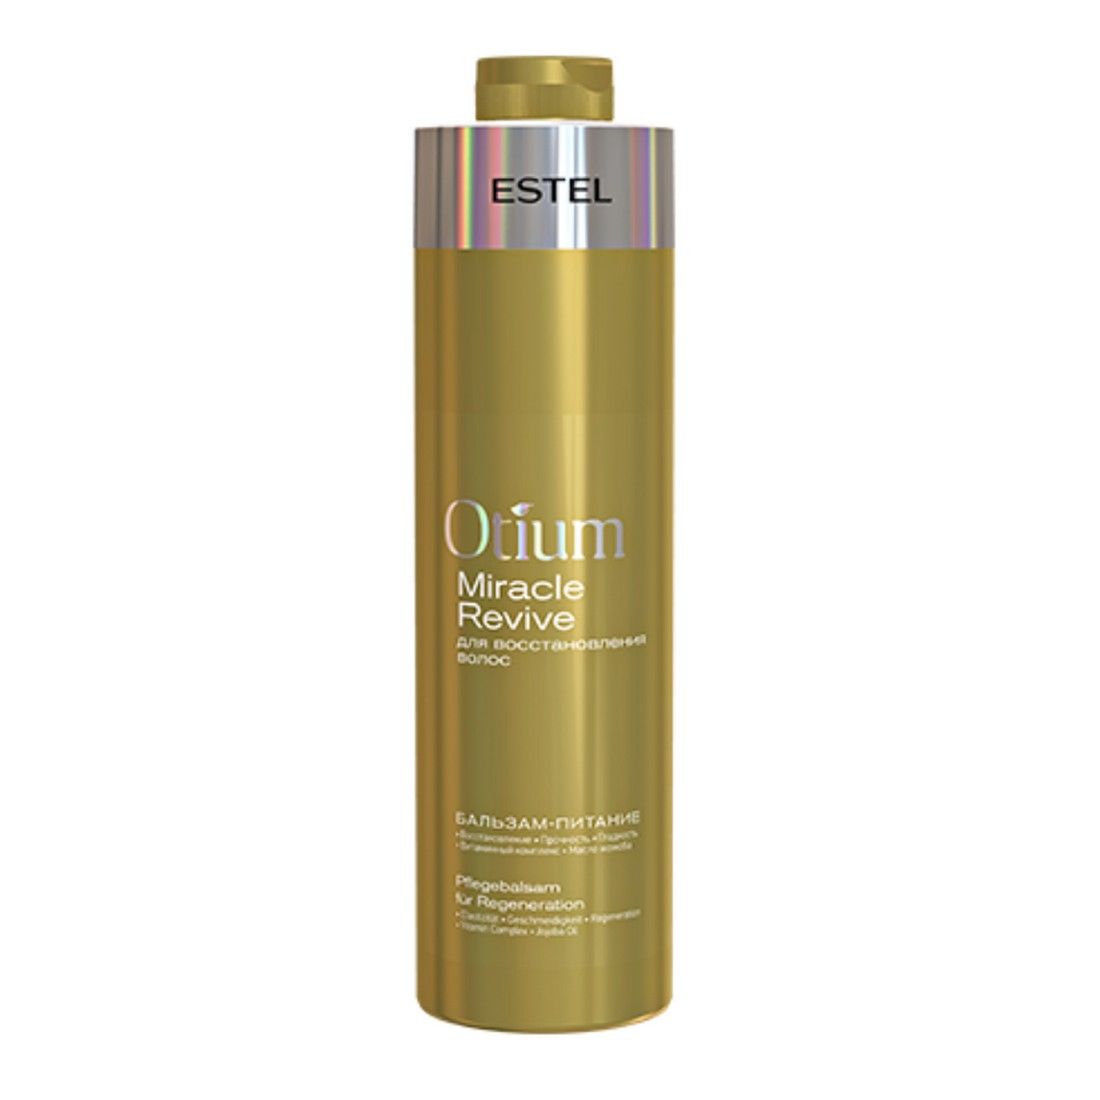 OTM.30/1000 Бальзам-питание для восстановления волос 1000 мл, OTIUM Miracle Revive